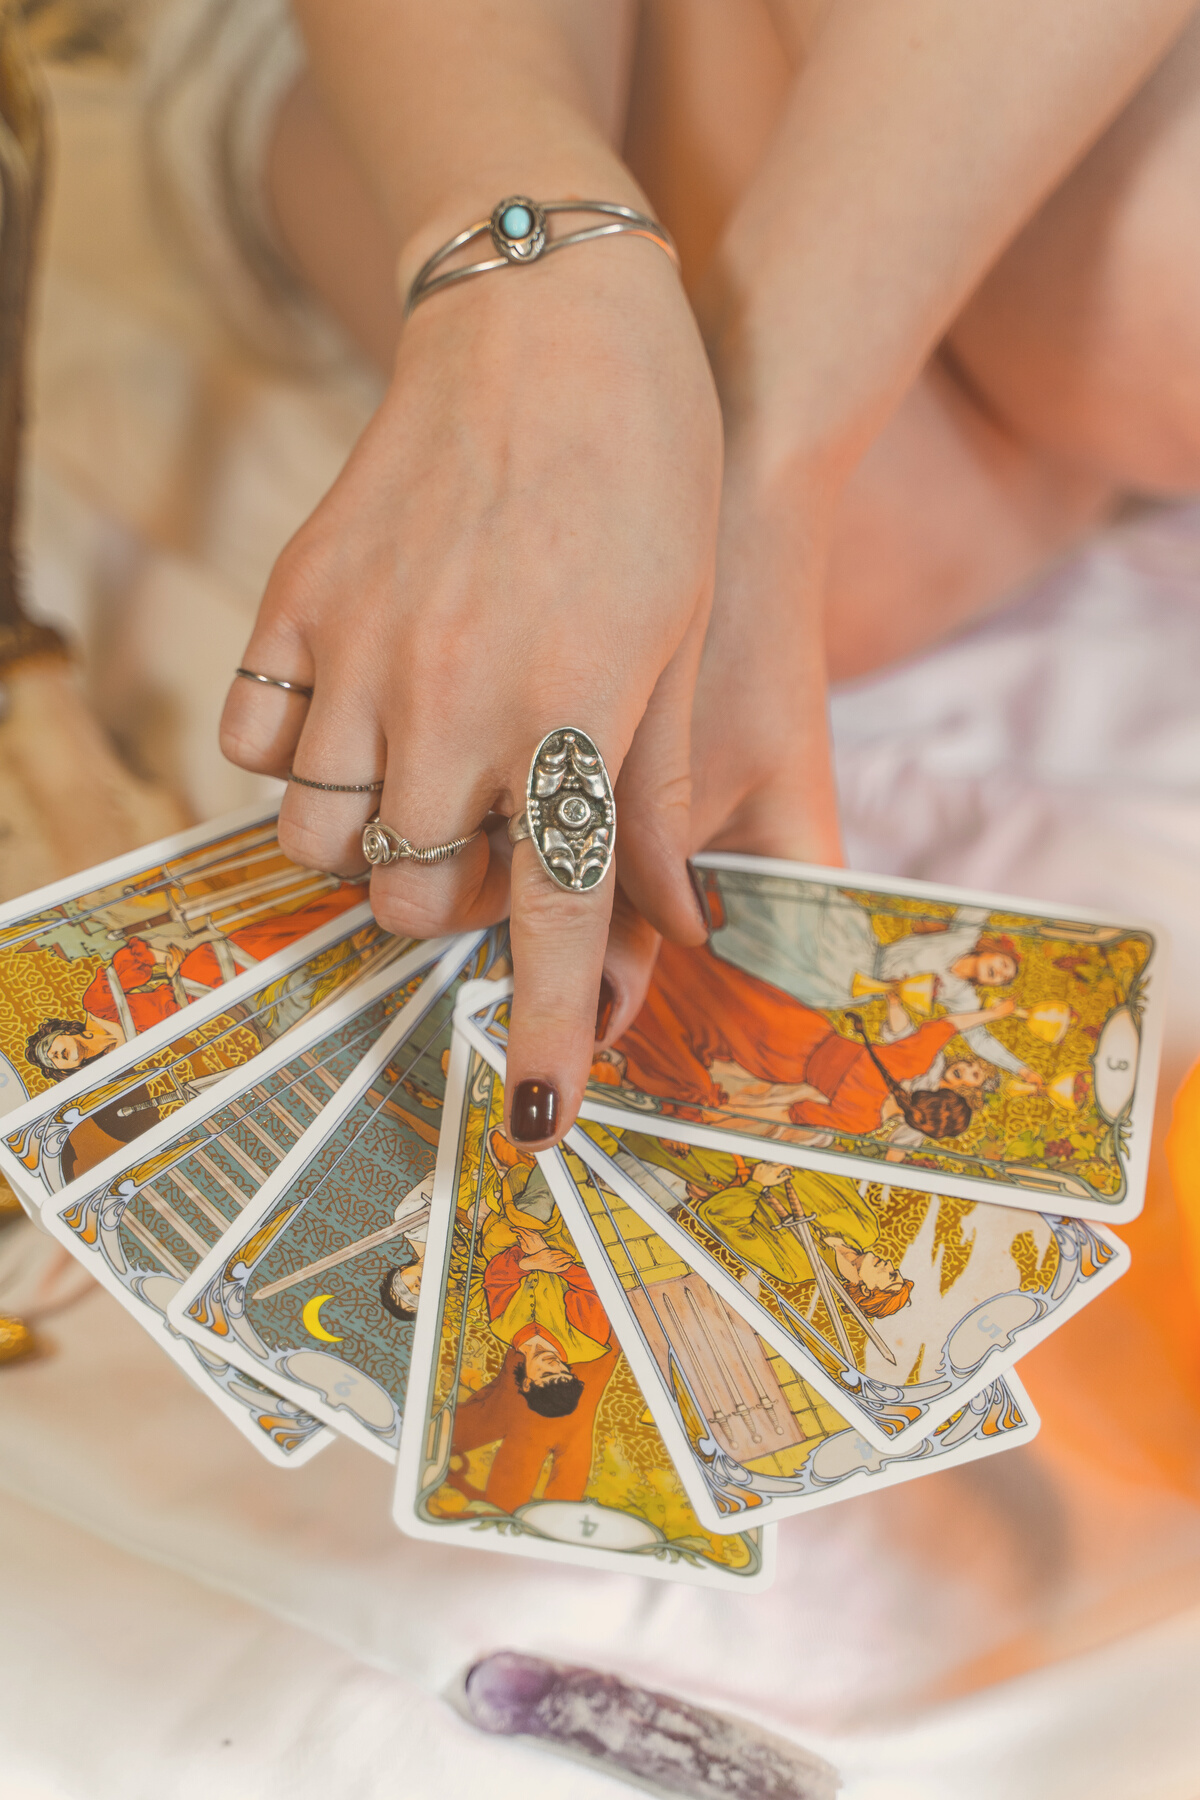 Woman Reading Tarot Cards 